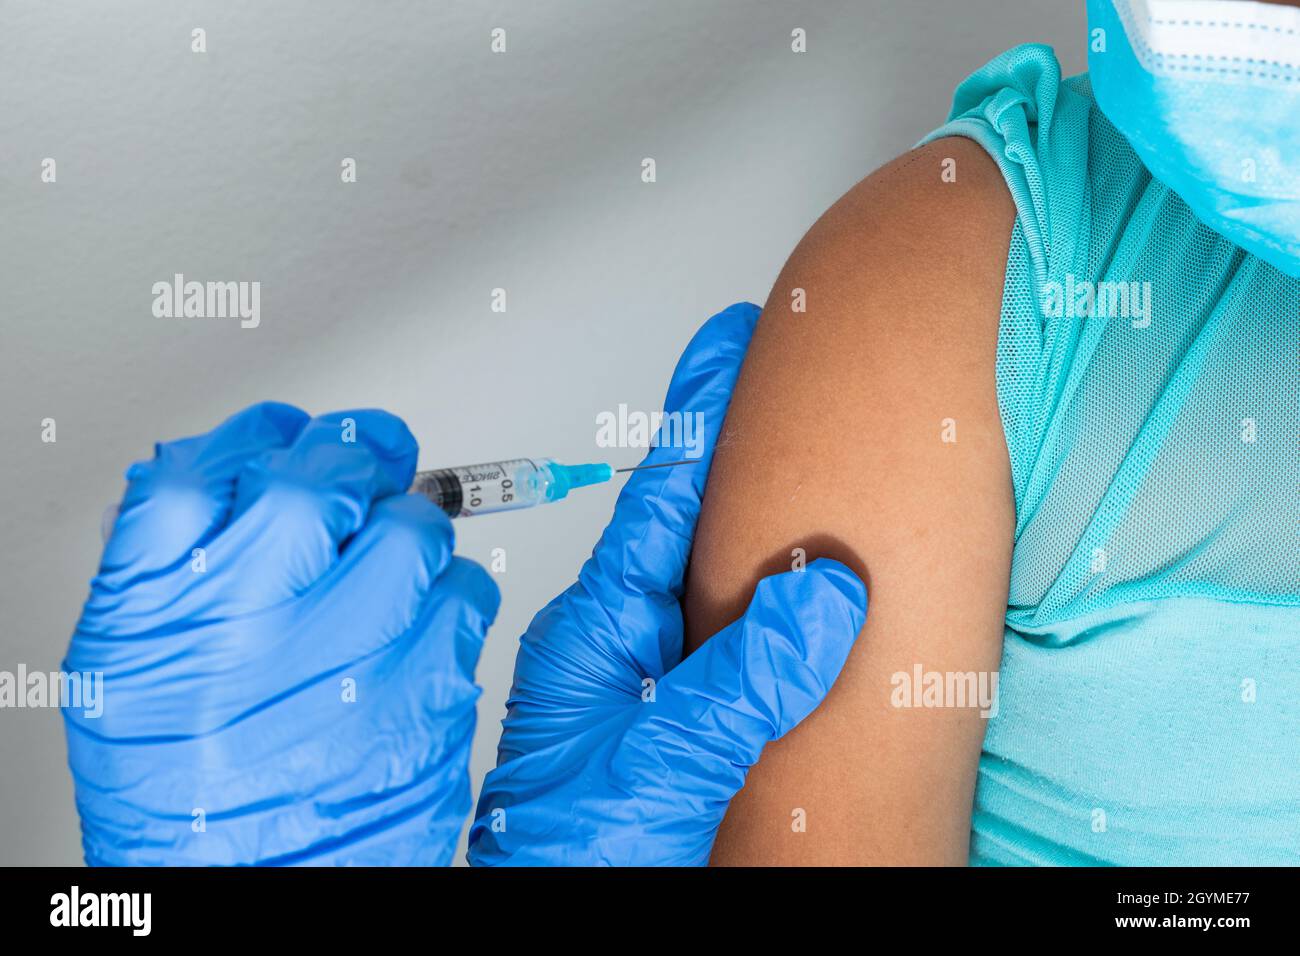 Kinderkrankenschwester im Begriff, die Injektion in den Arm eines kleinen braunen Mädchens zu verabreichen. Arzt injiziert covid-19-Impfstoff. Grippe-Impfstoff. Medizinisches Concep Stockfoto